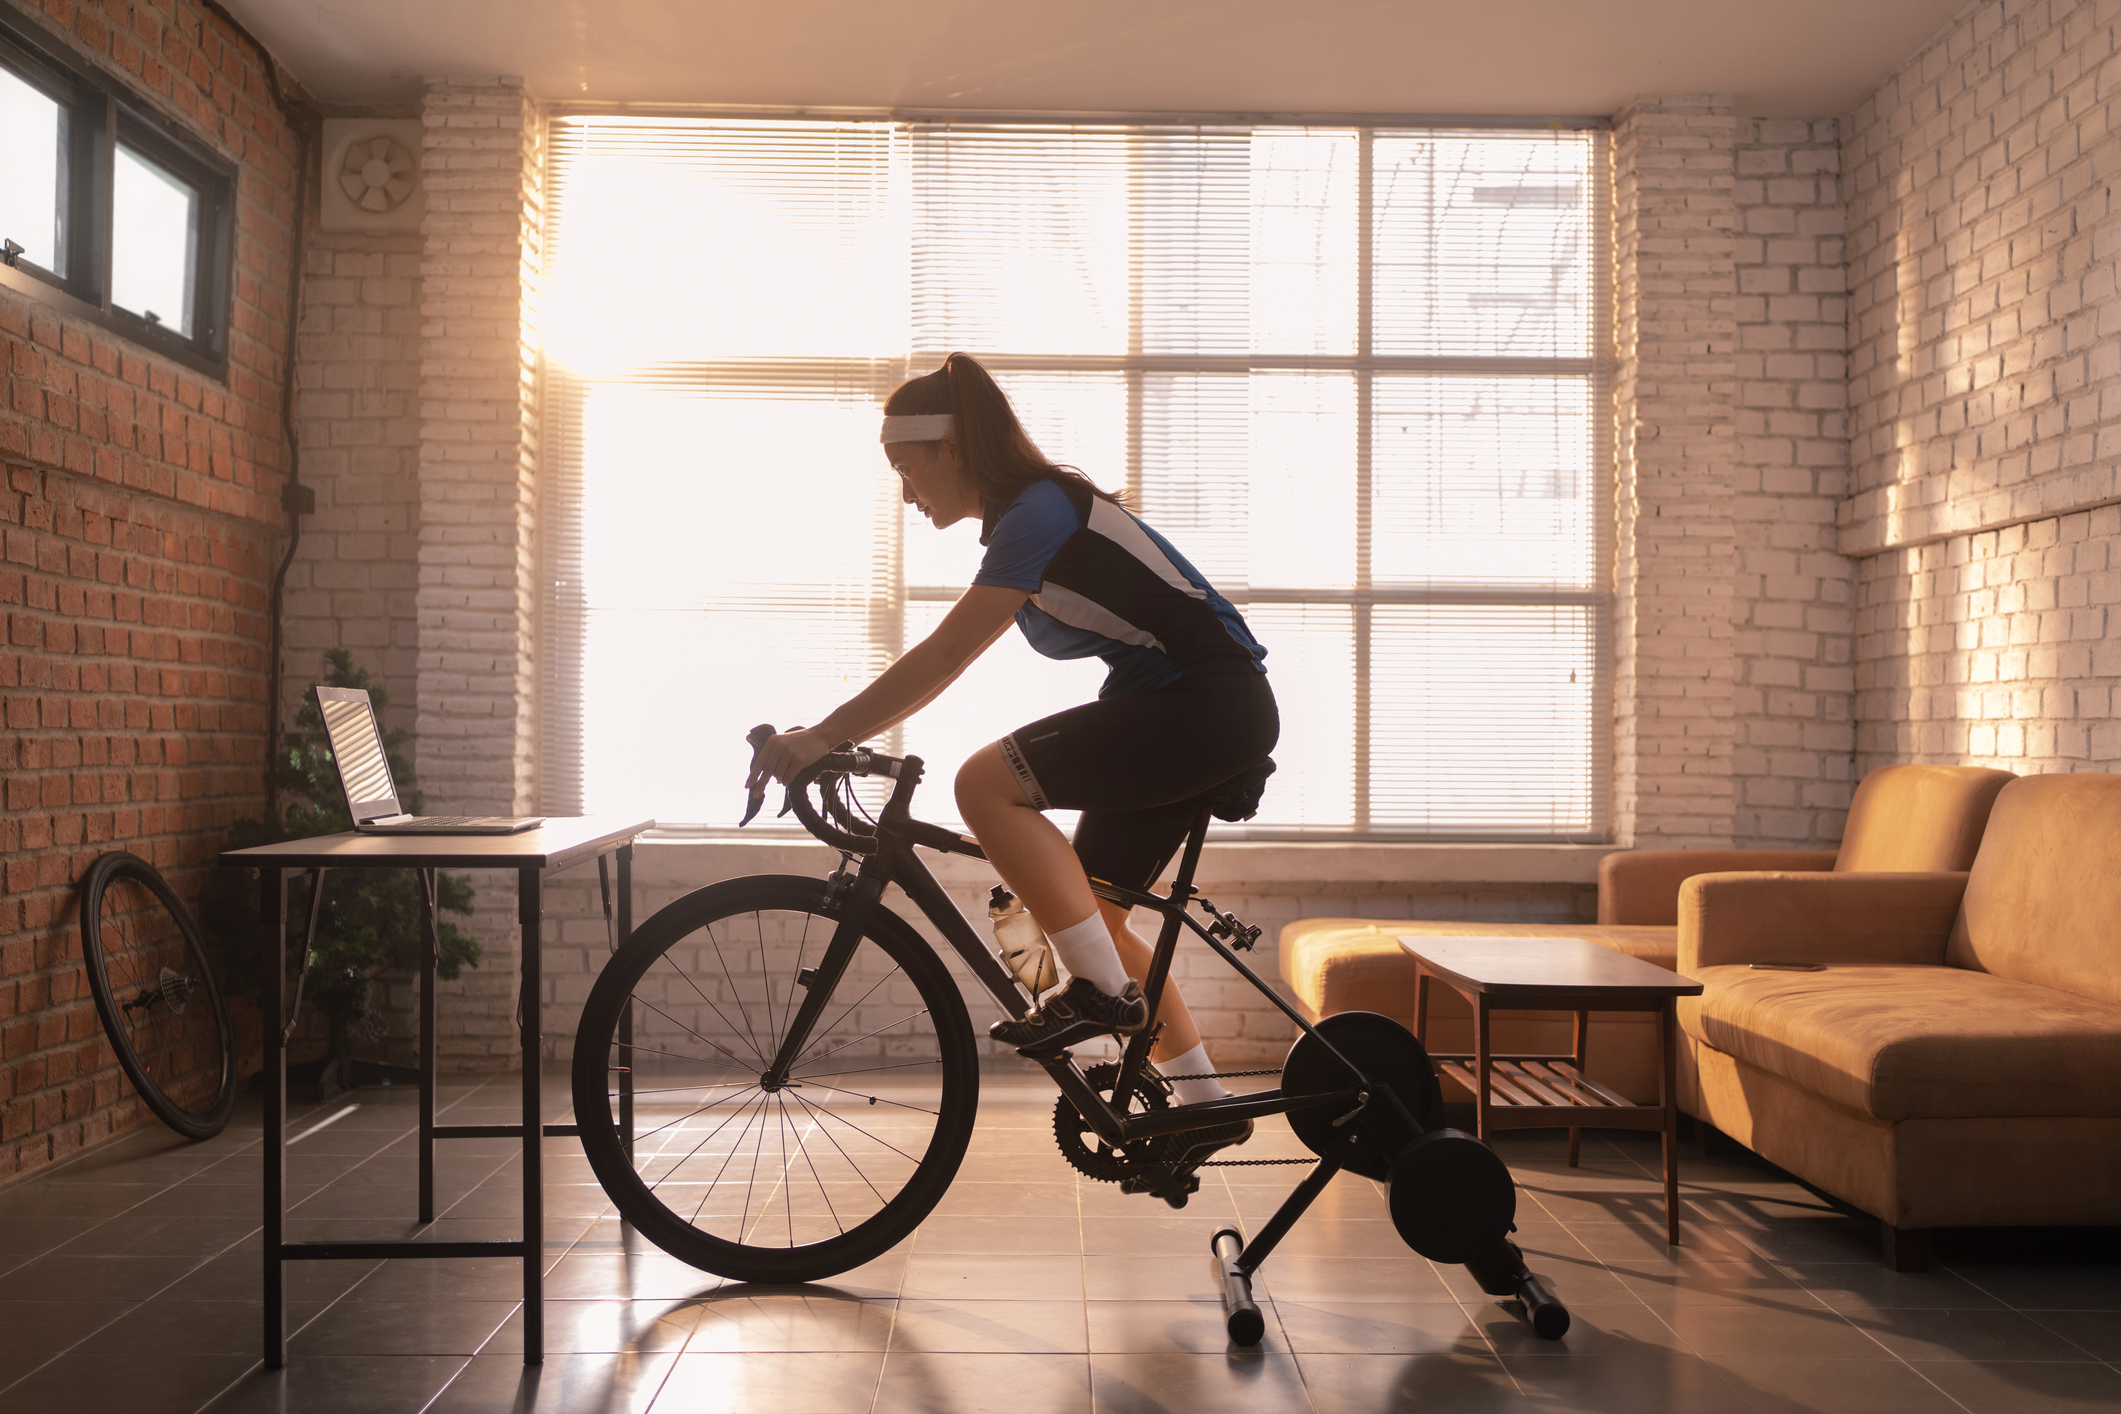 l'home trainer permet une récupération active efficace pour le cycliste.